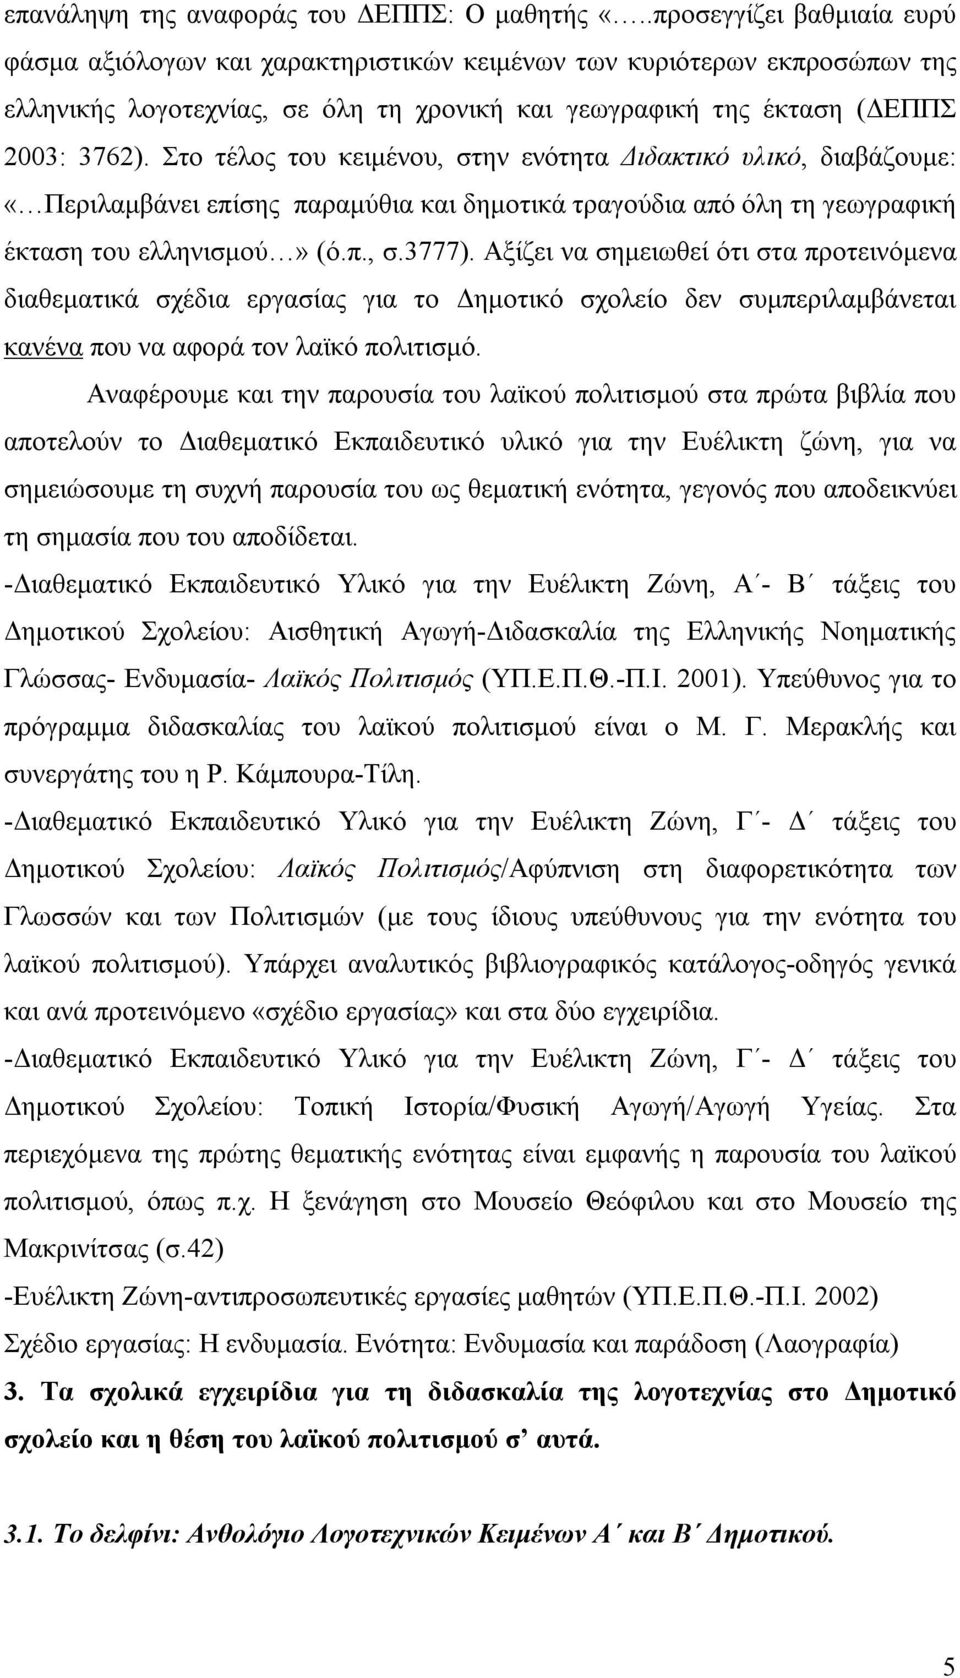 Στο τέλος του κειμένου, στην ενότητα Διδακτικό υλικό, διαβάζουμε: «Περιλαμβάνει επίσης παραμύθια και δημοτικά τραγούδια από όλη τη γεωγραφική έκταση του ελληνισμού» (ό.π., σ.3777).